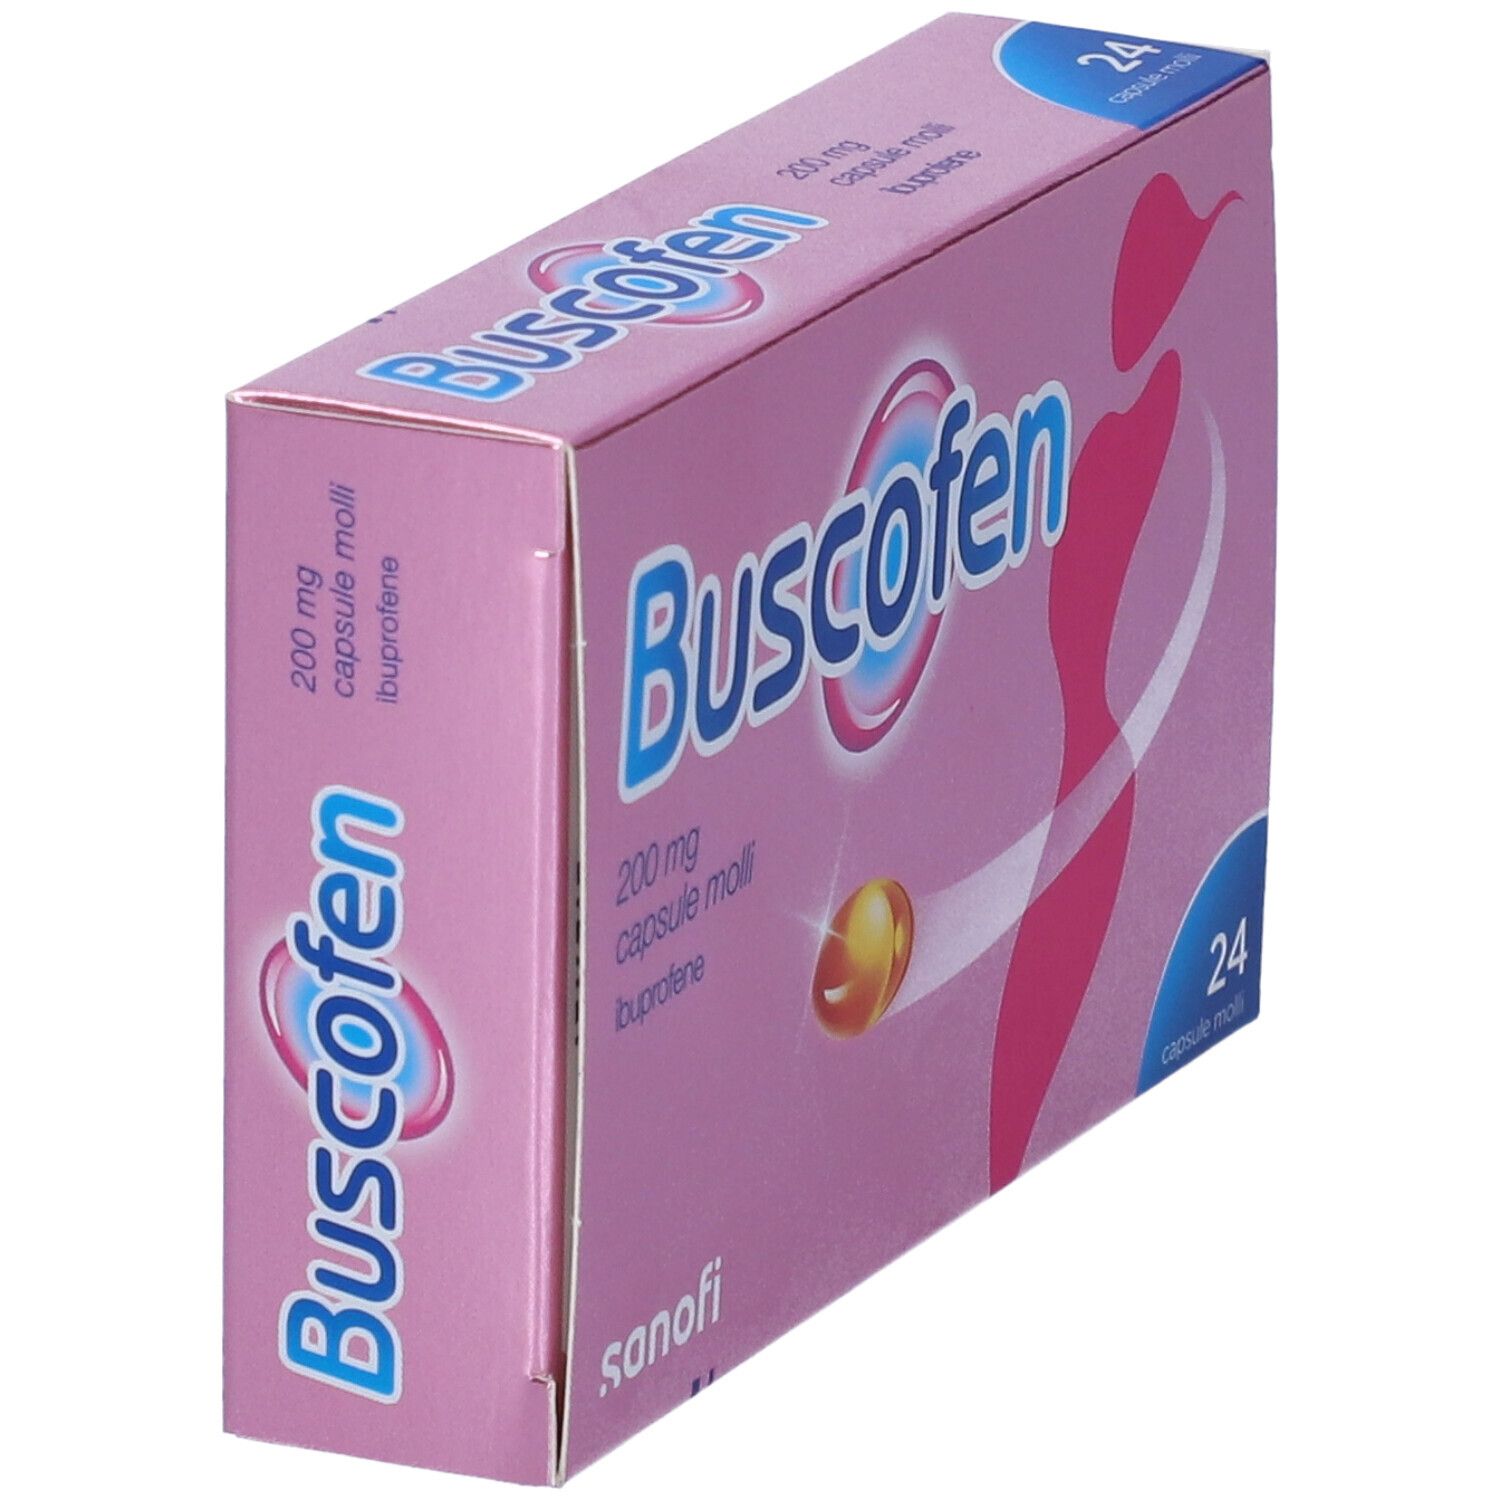 Buscofen® 24 Capsule molli